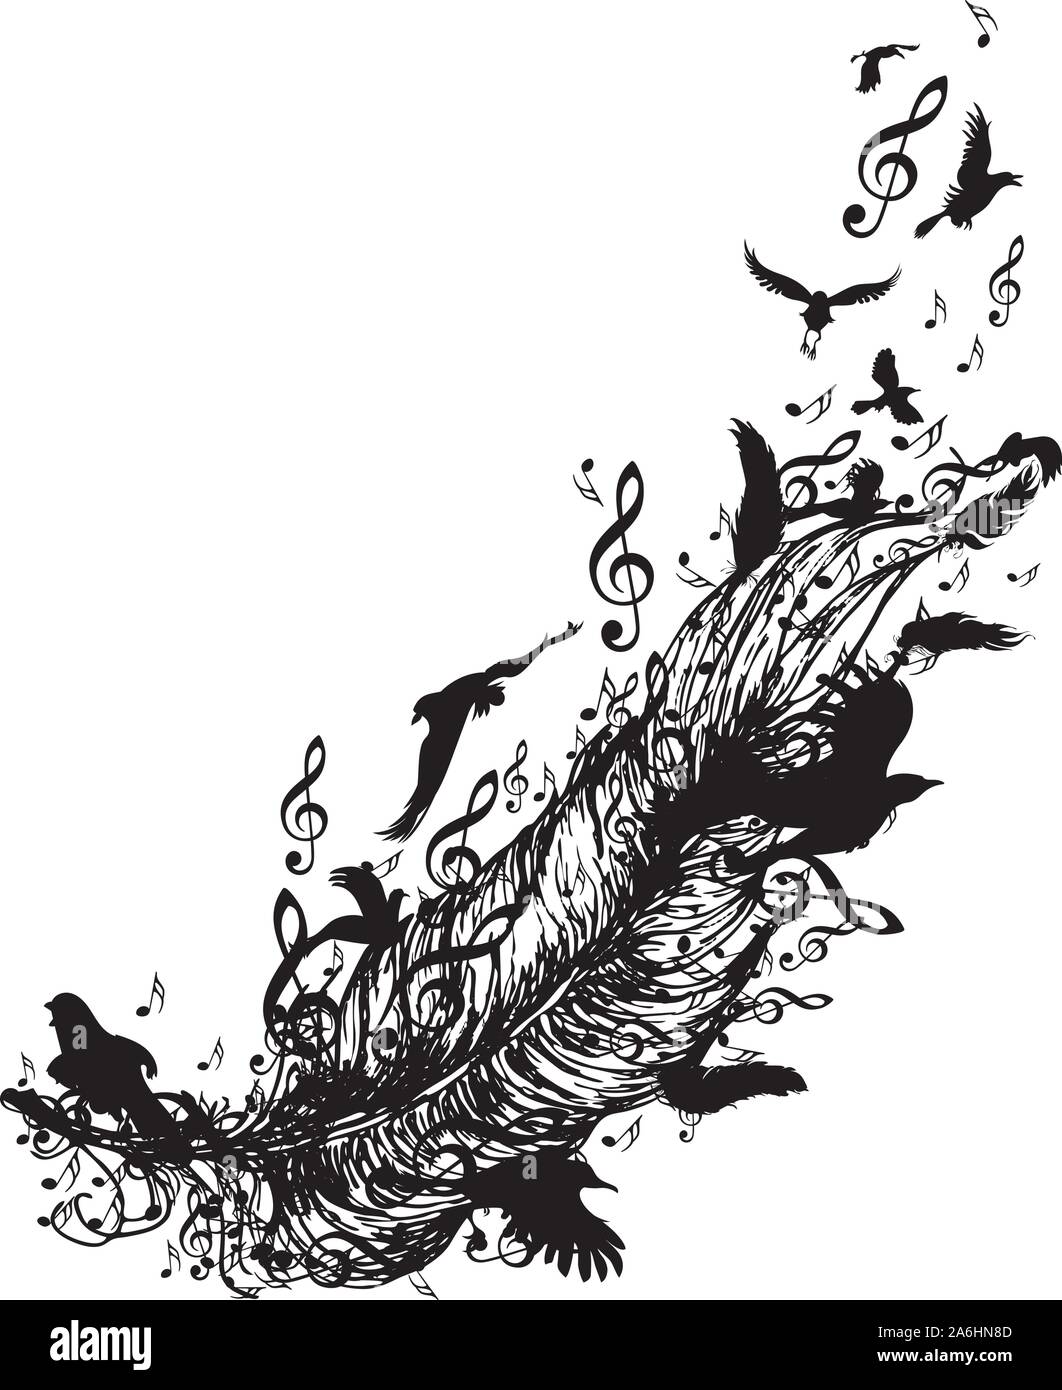 Les oiseaux en plein vol et de plume et notes de musique d'ossature, tatouage dessin en noir et blanc. Illustration de Vecteur